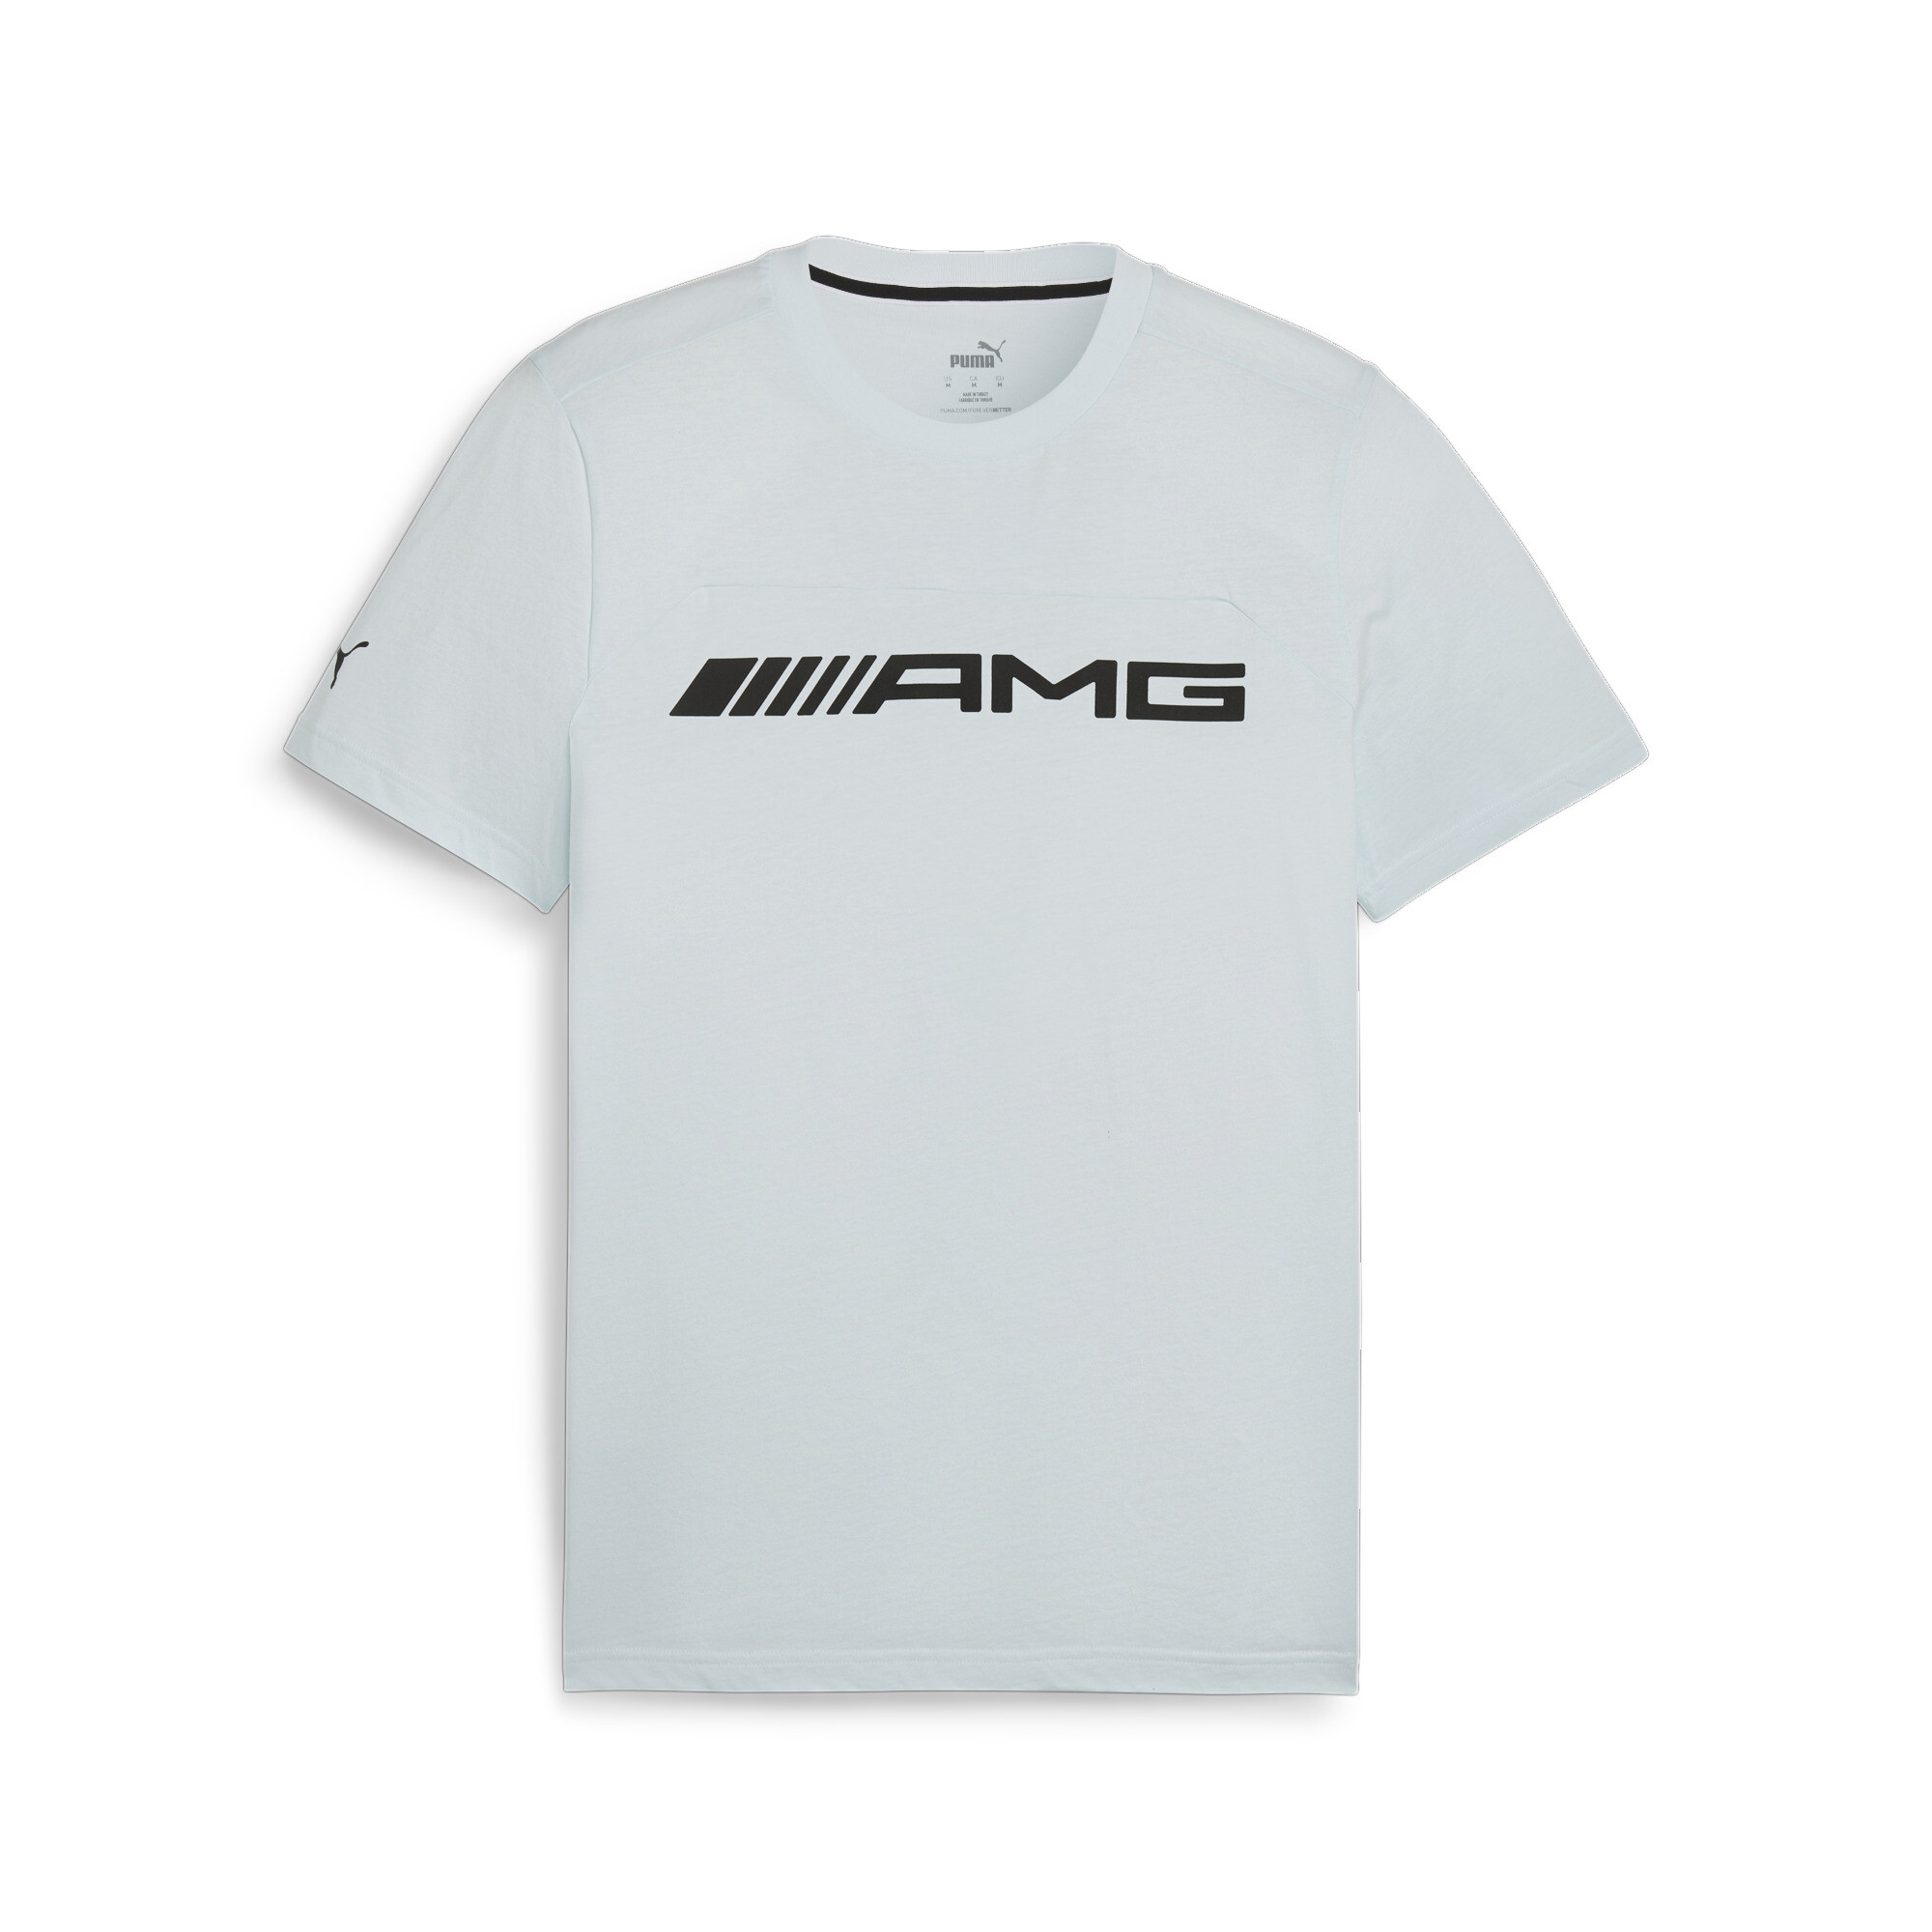 Men's Puma AMG Motorsports T-Shirt, Blue, Size M, Clothing